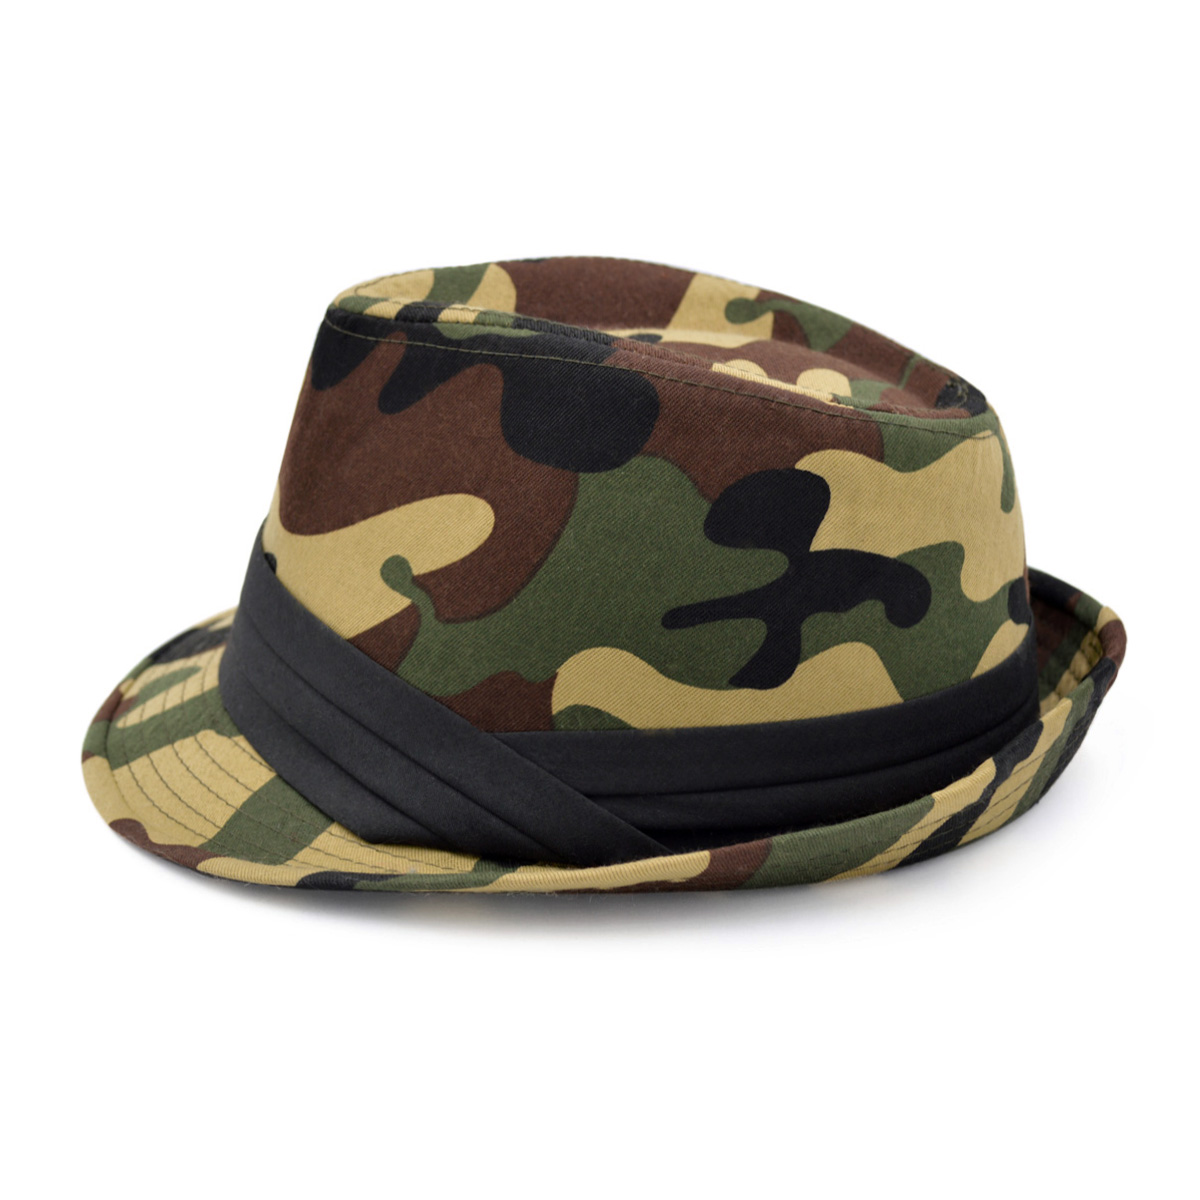 Premium Unisex Camouflage Black Band Fedora Hat - image 4 of 4